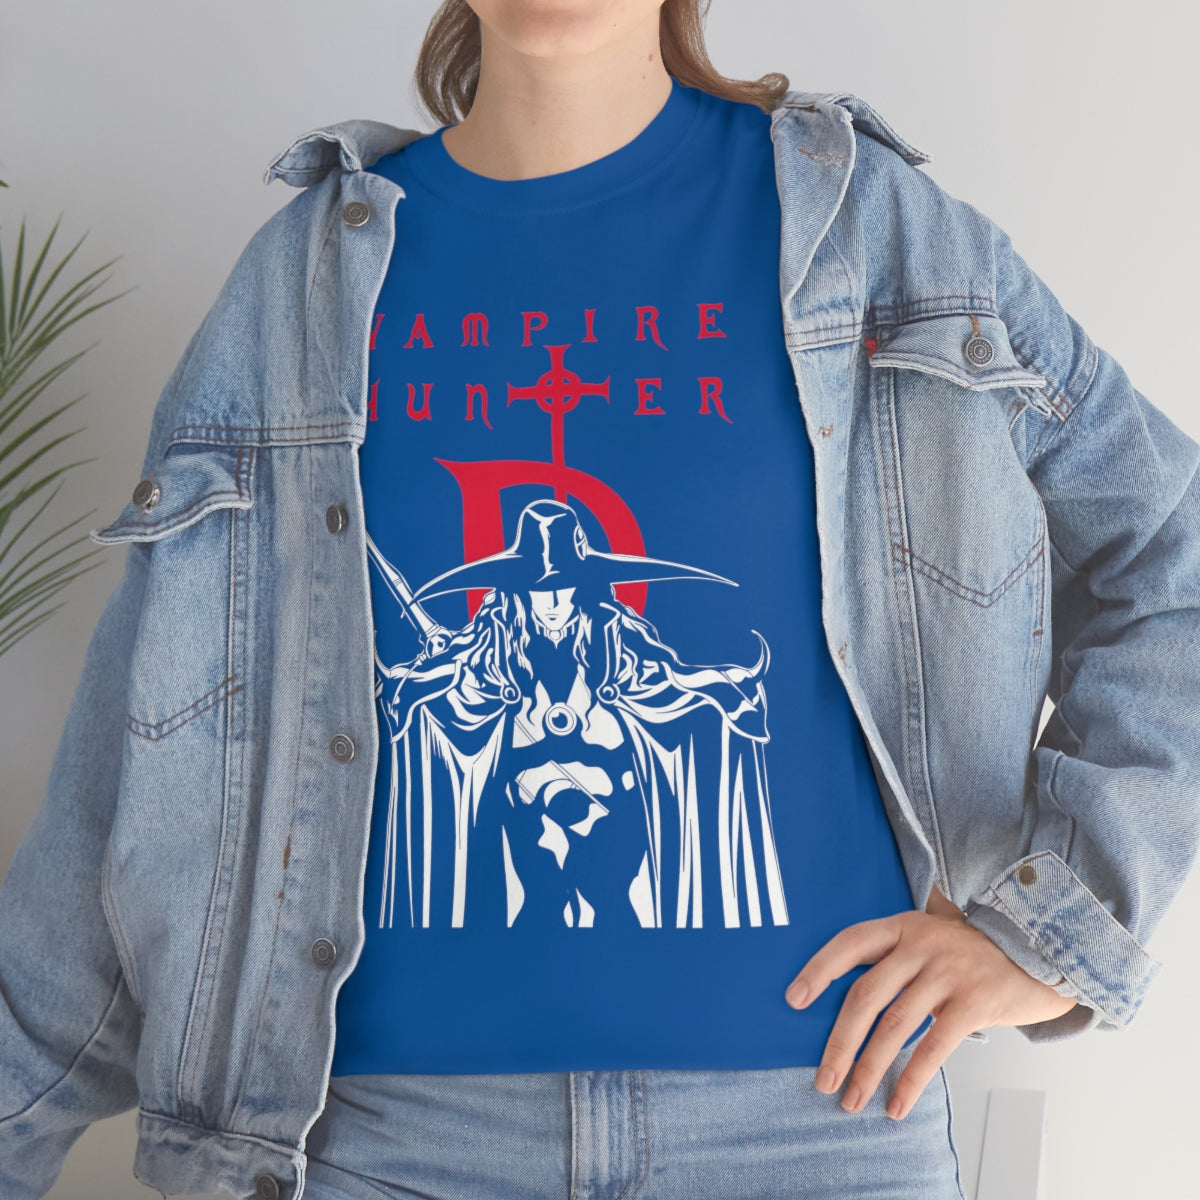 Vampire Hunter D T-Shirt